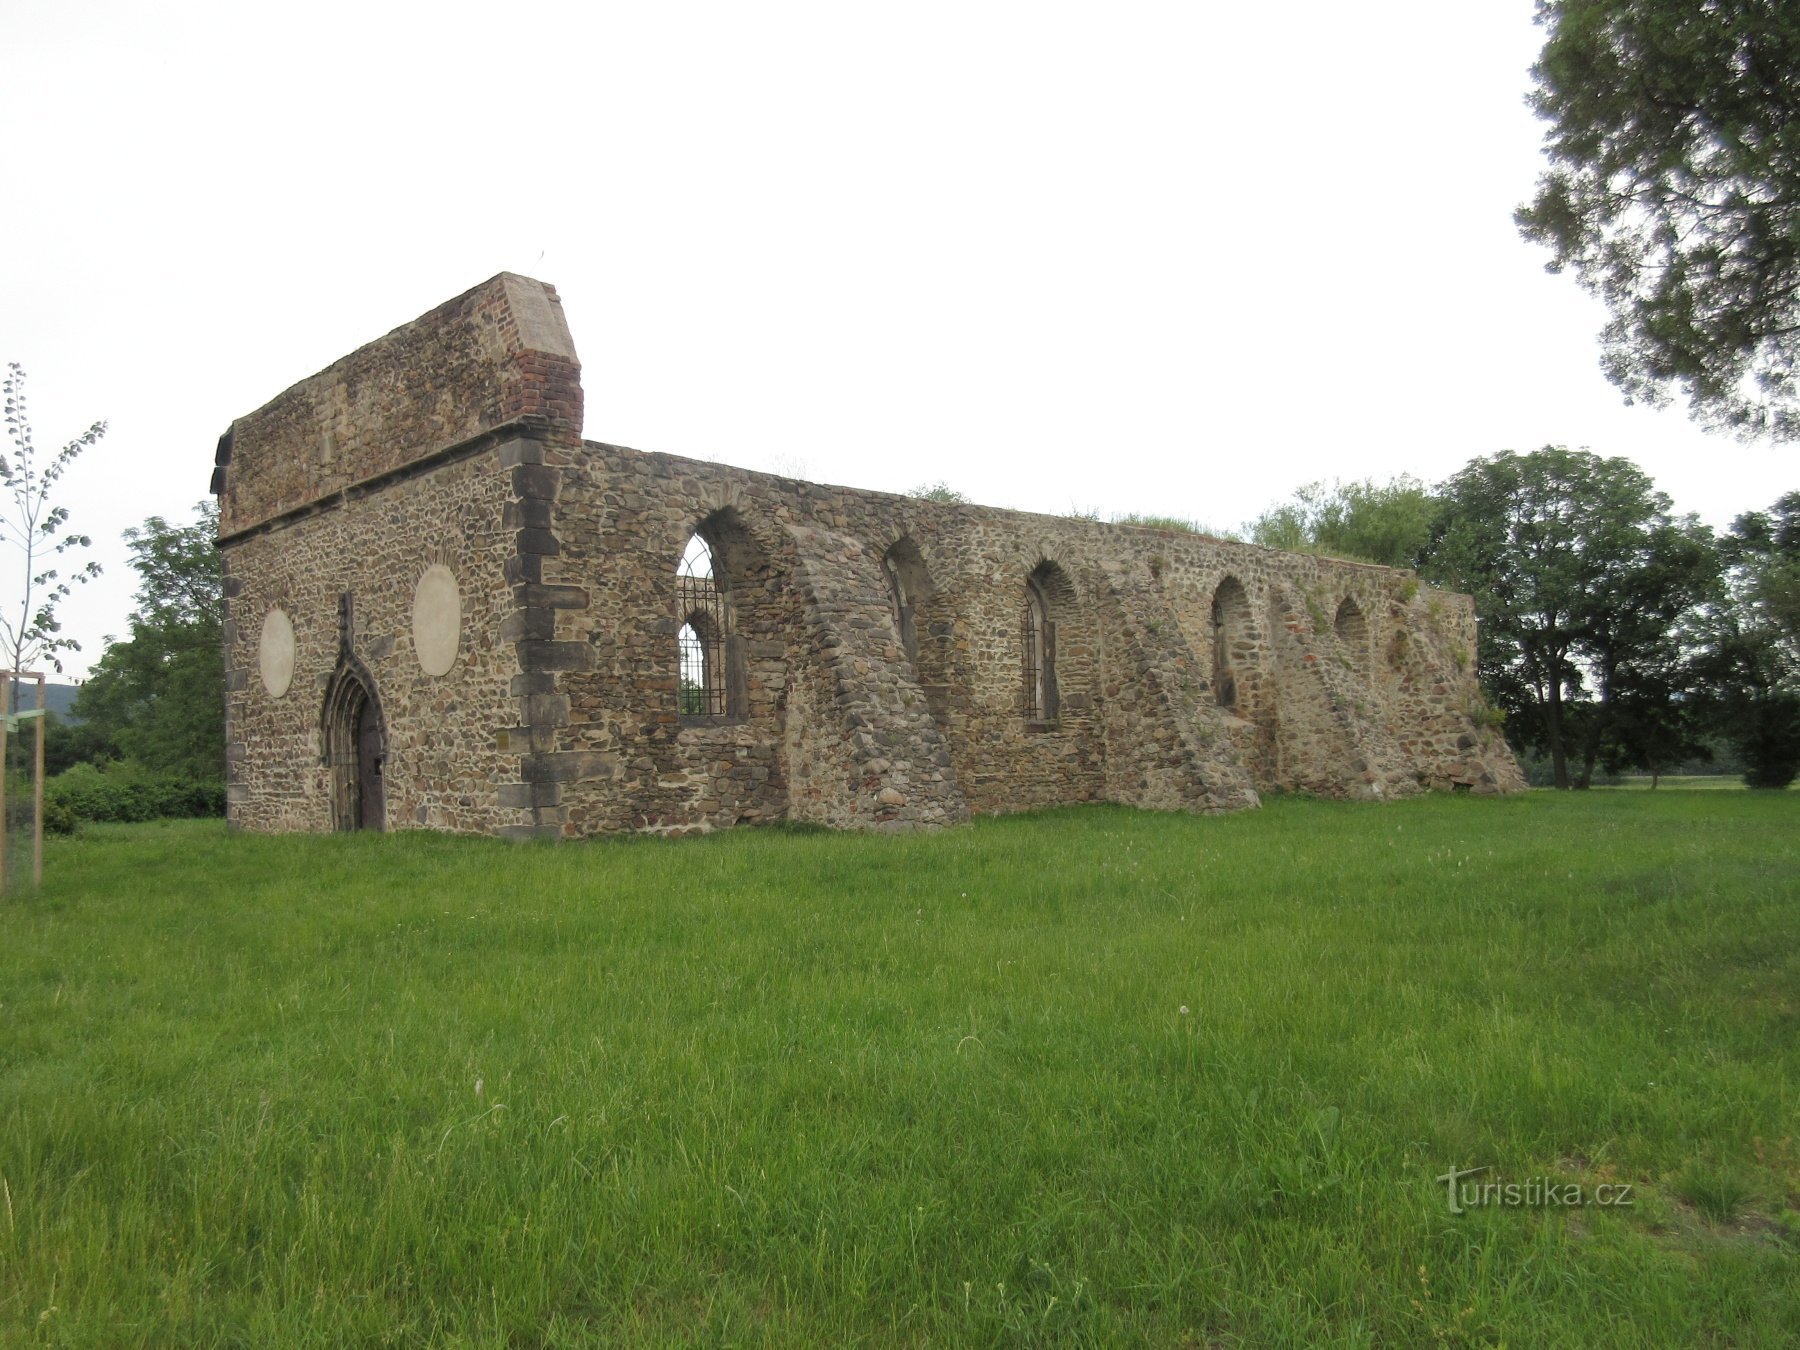 Ruinerna av den gotiska kyrkan St. Procopius